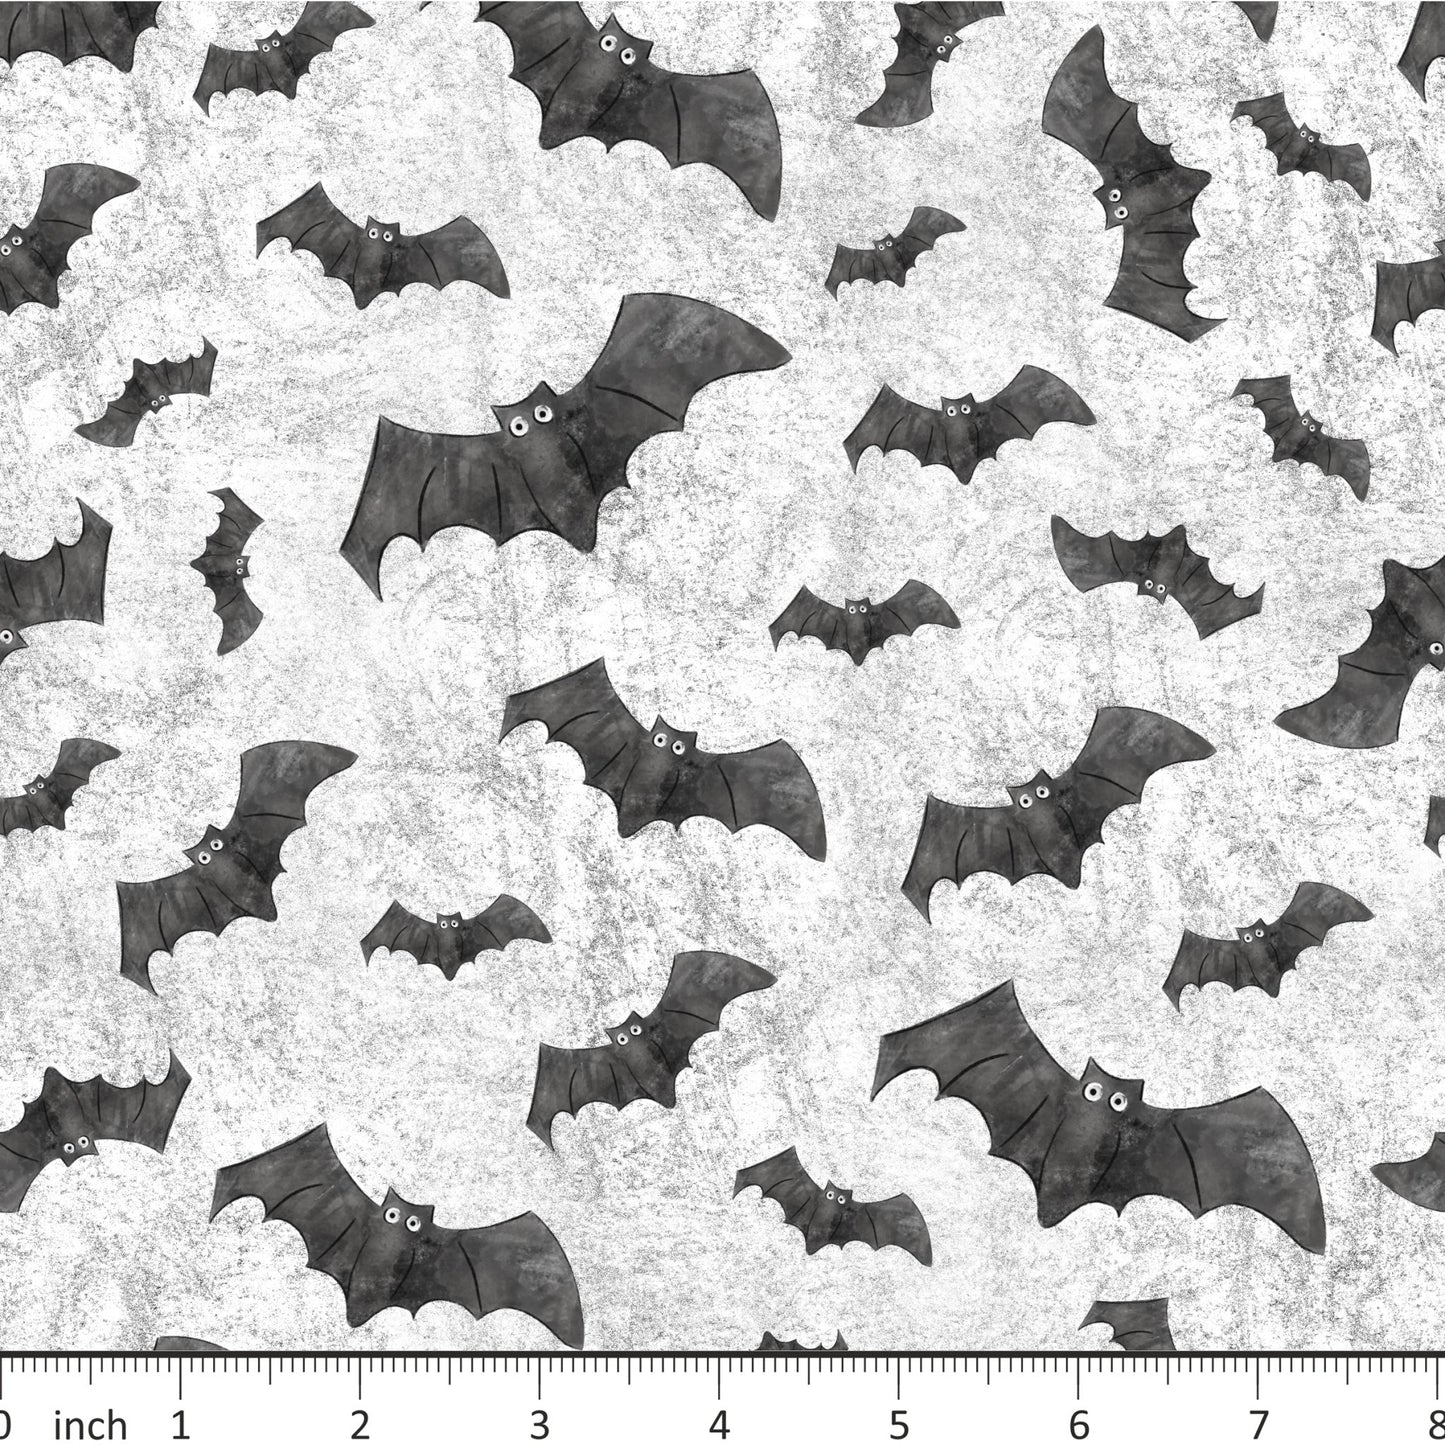 FineapplePair - Bats on Grey - Little Rhody Sewing Co.